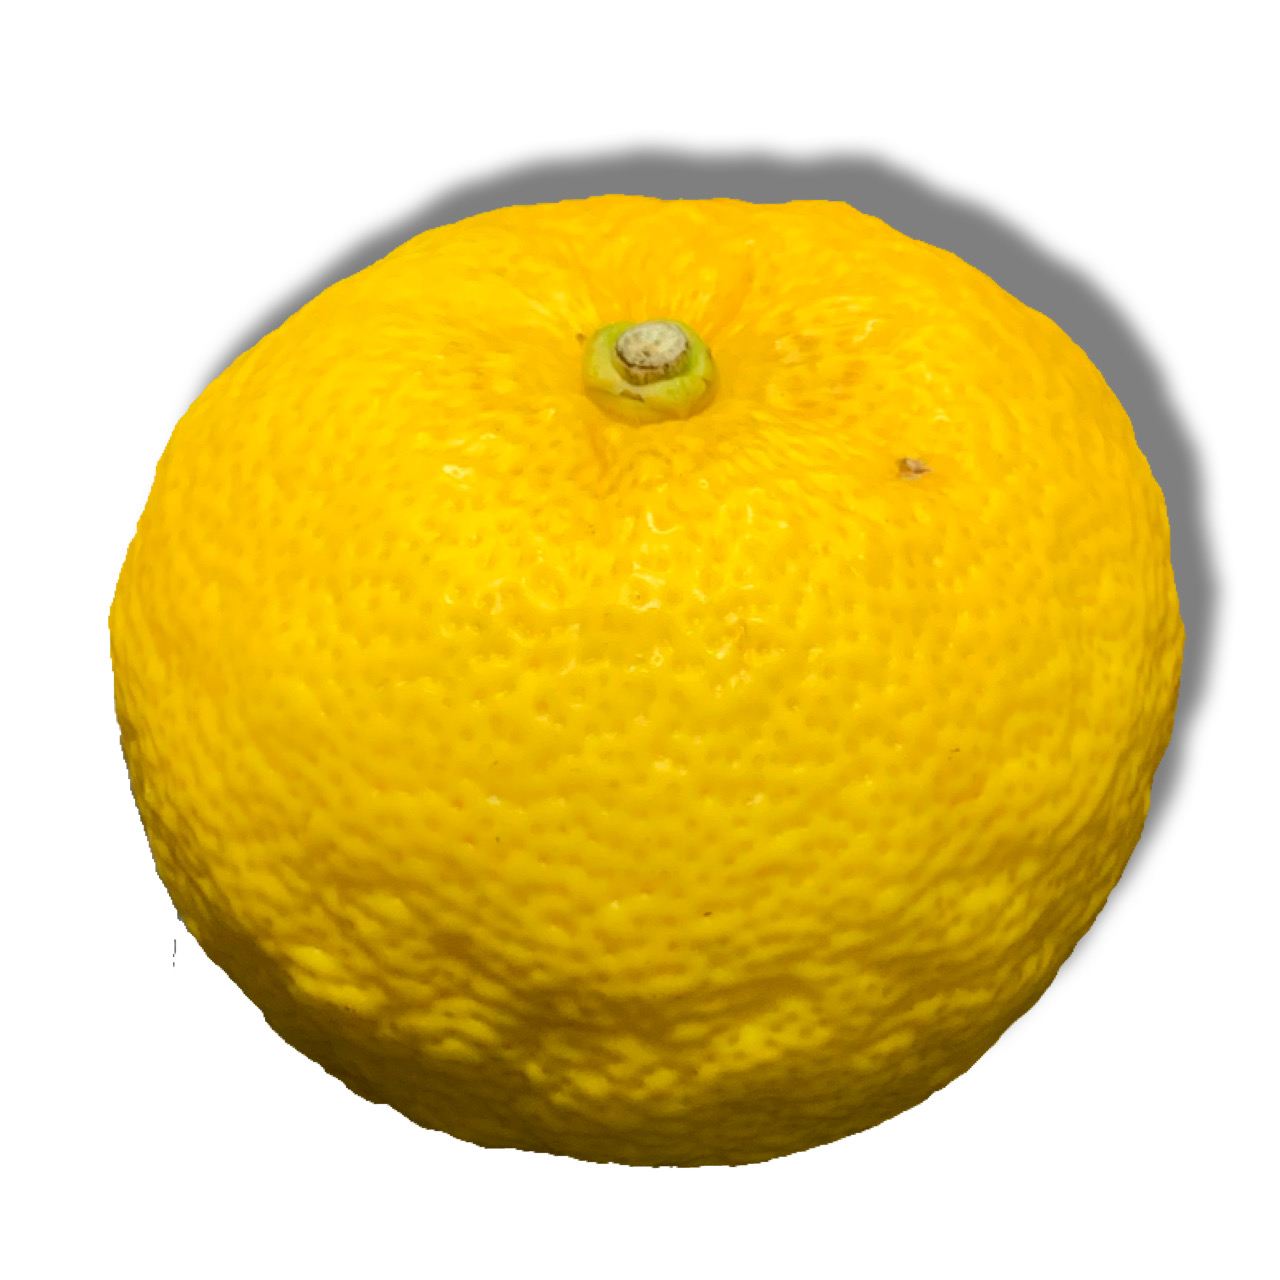 Mq/Yuzu citrus